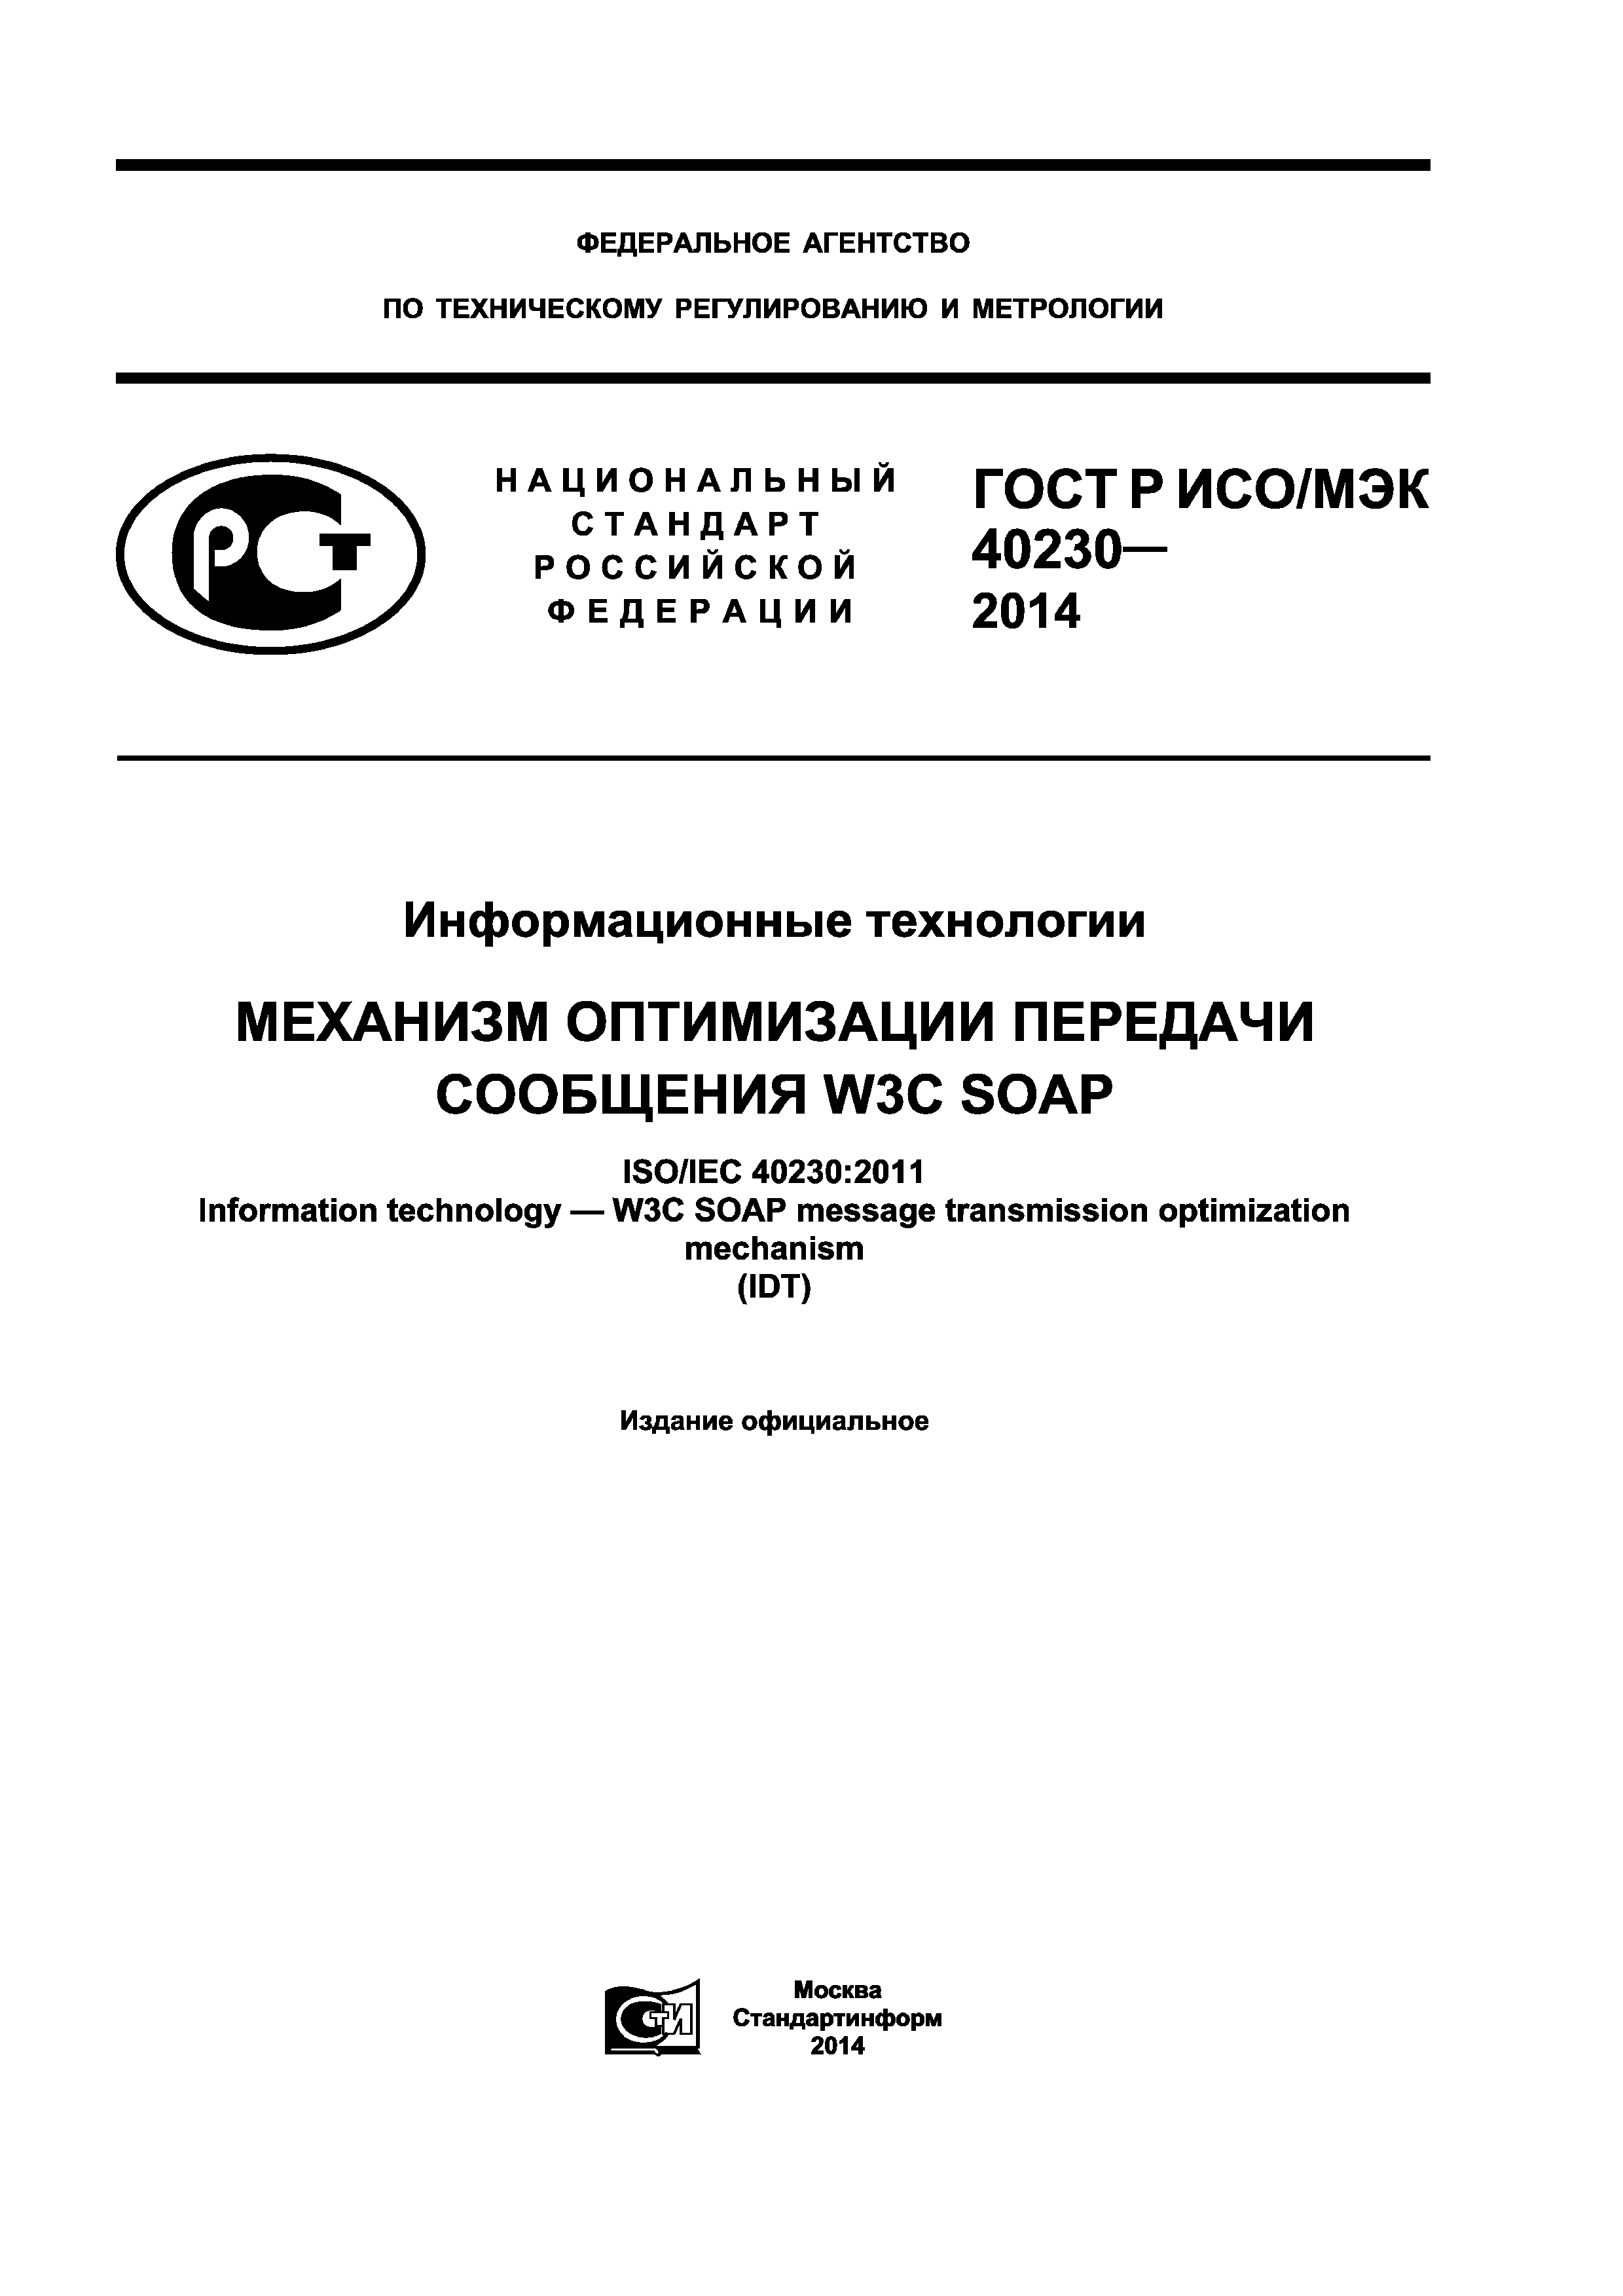 ГОСТ Р ИСО/МЭК 40230-2014